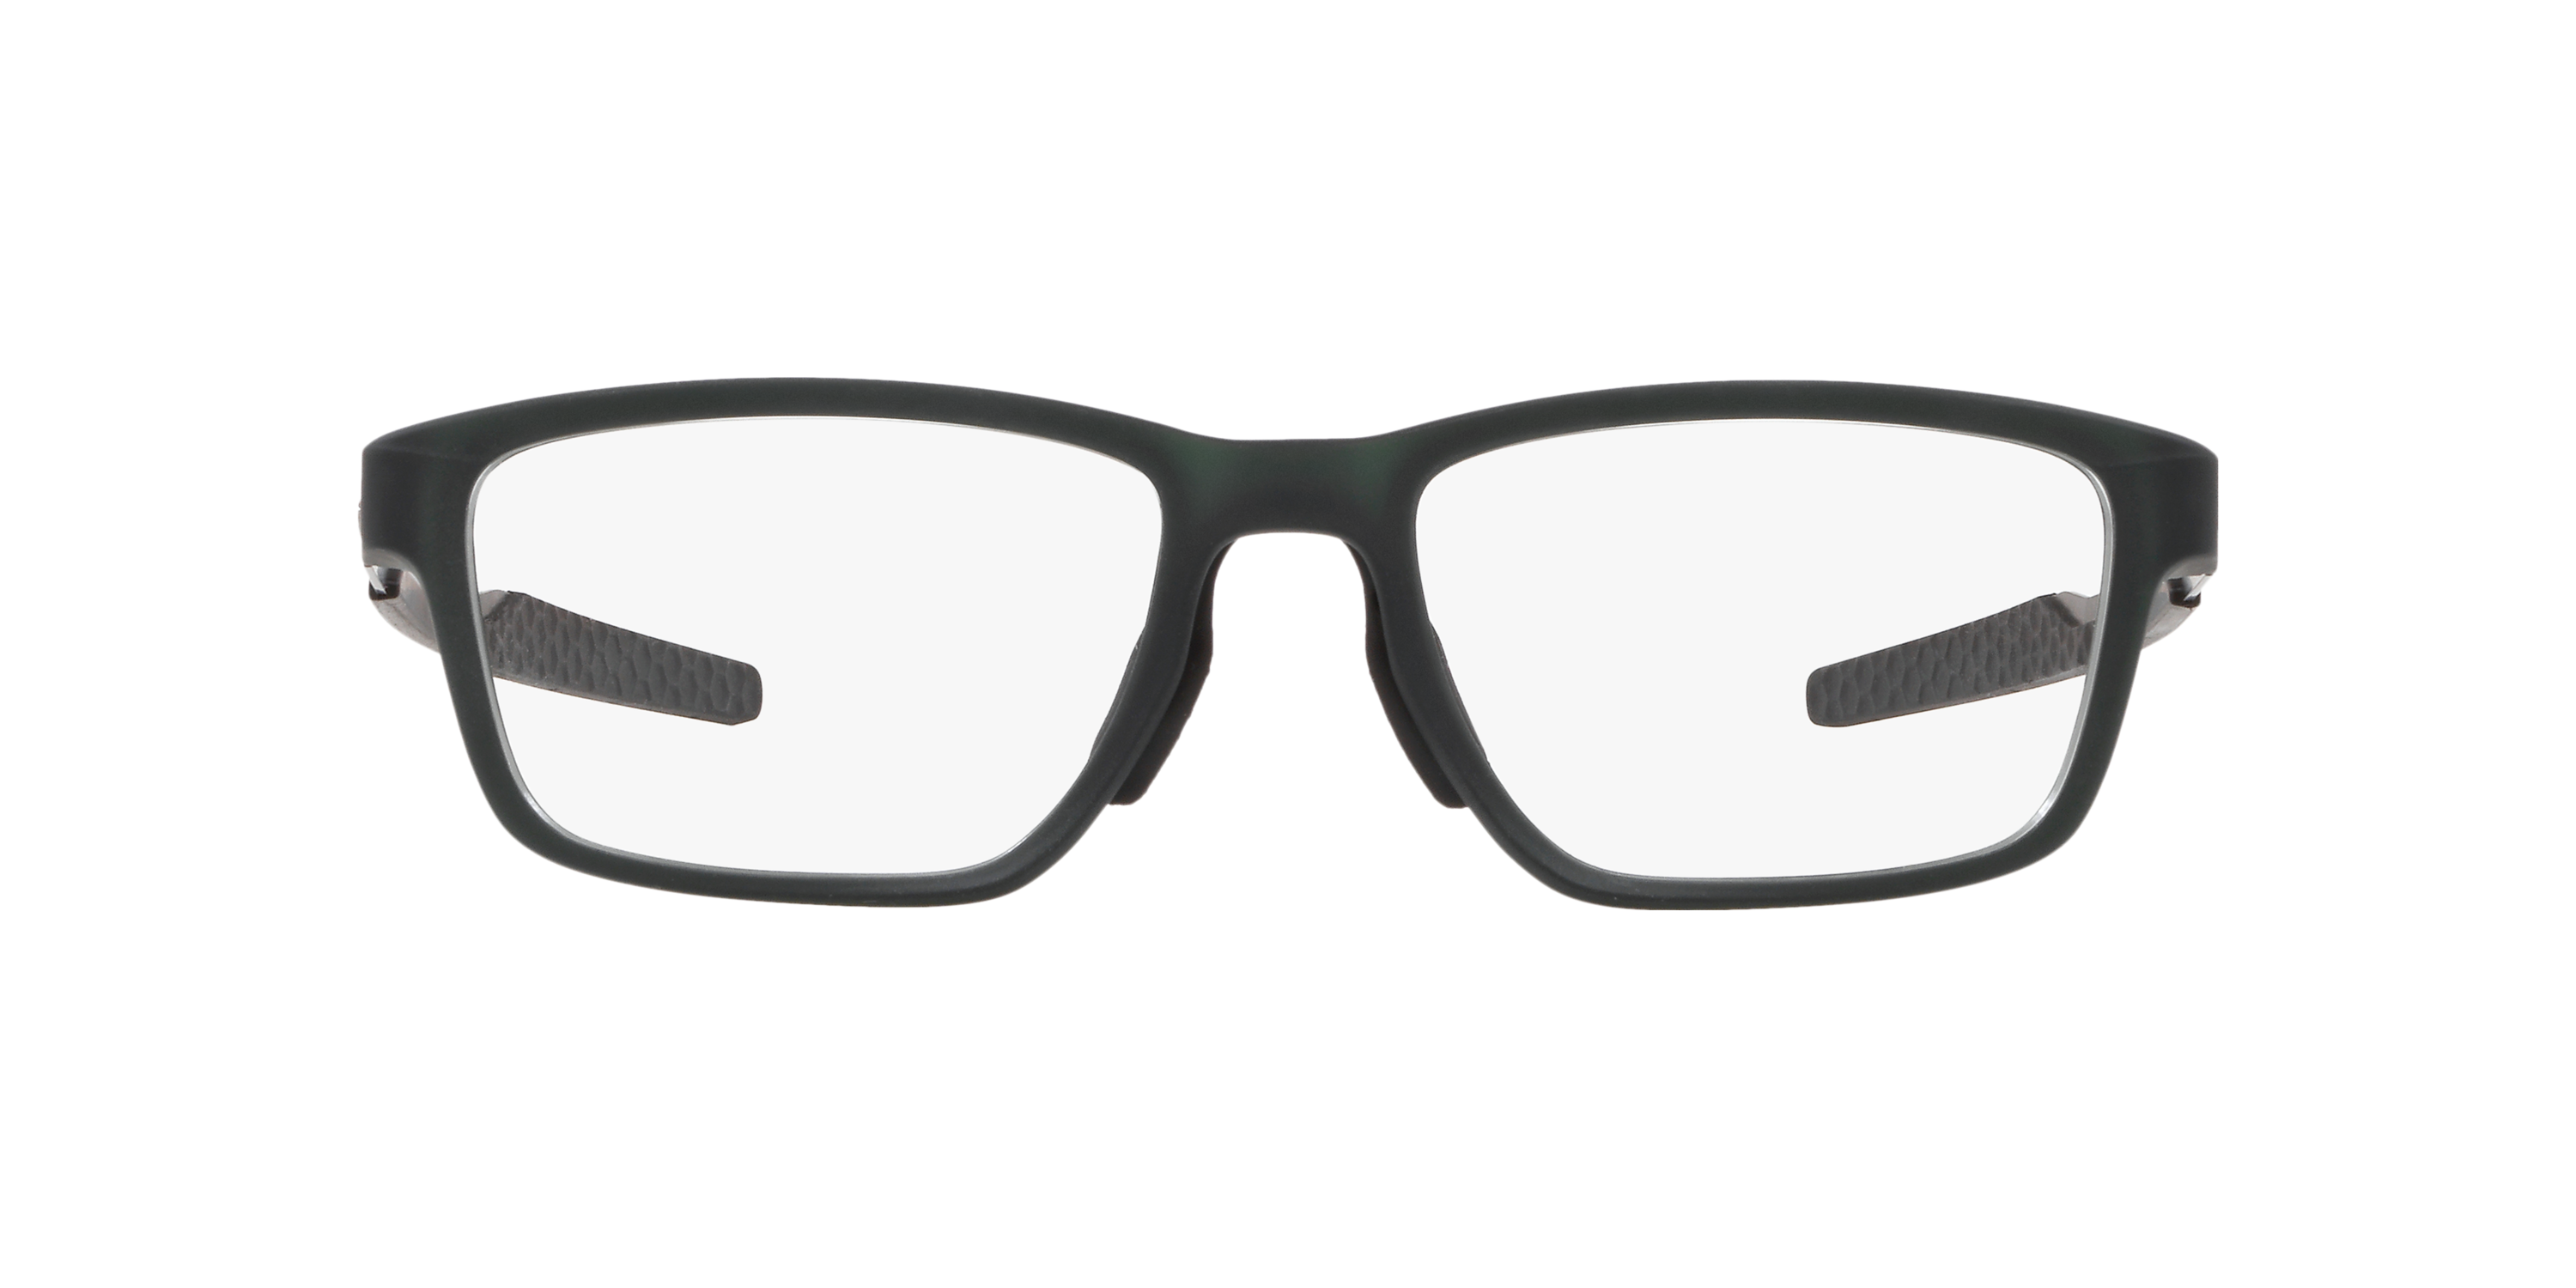 Metalink Matte Olive Eyeglasses | Oakley® US